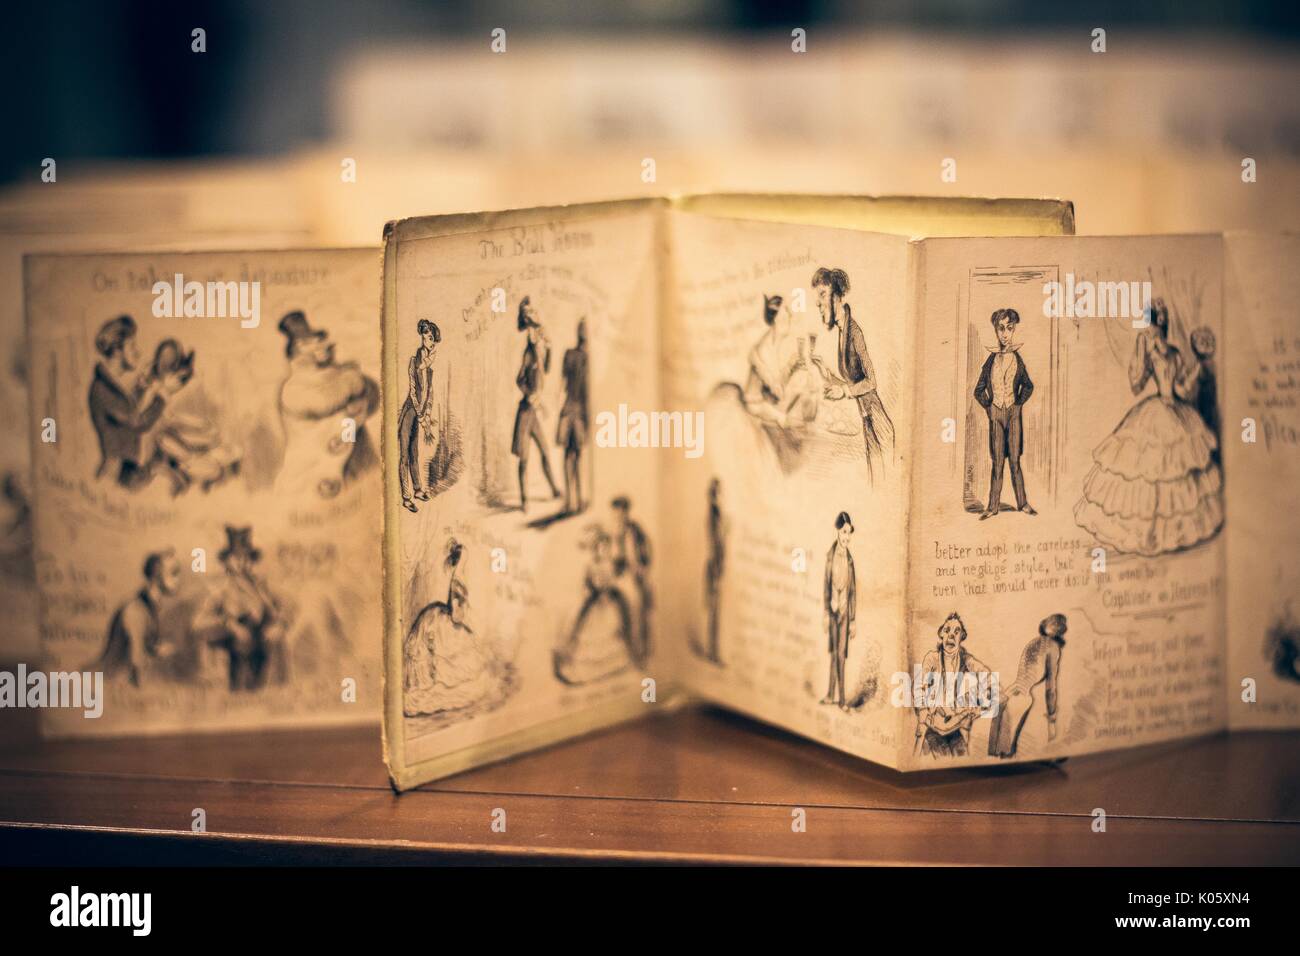 Un manuscrit de bruni et avec des illustrations de couples danser, ouvert sur une table dans le département des collections spéciales d'une bibliothèque universitaire, 2016. Banque D'Images